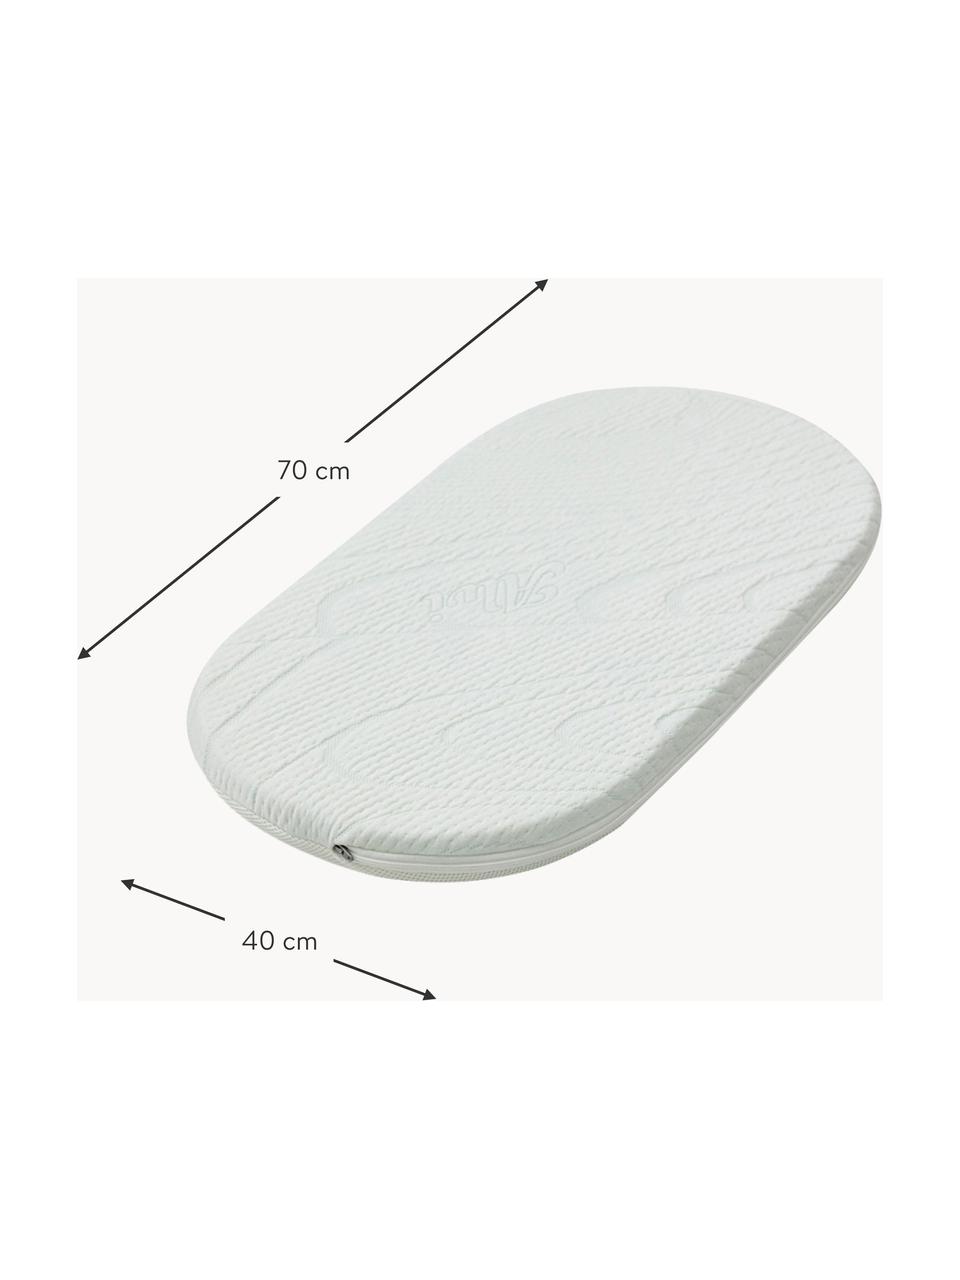 Colchón artesanal para cuna moisés Robe, Funda: 100% algodón crudo, Blanco, An 40 x L 70 cm